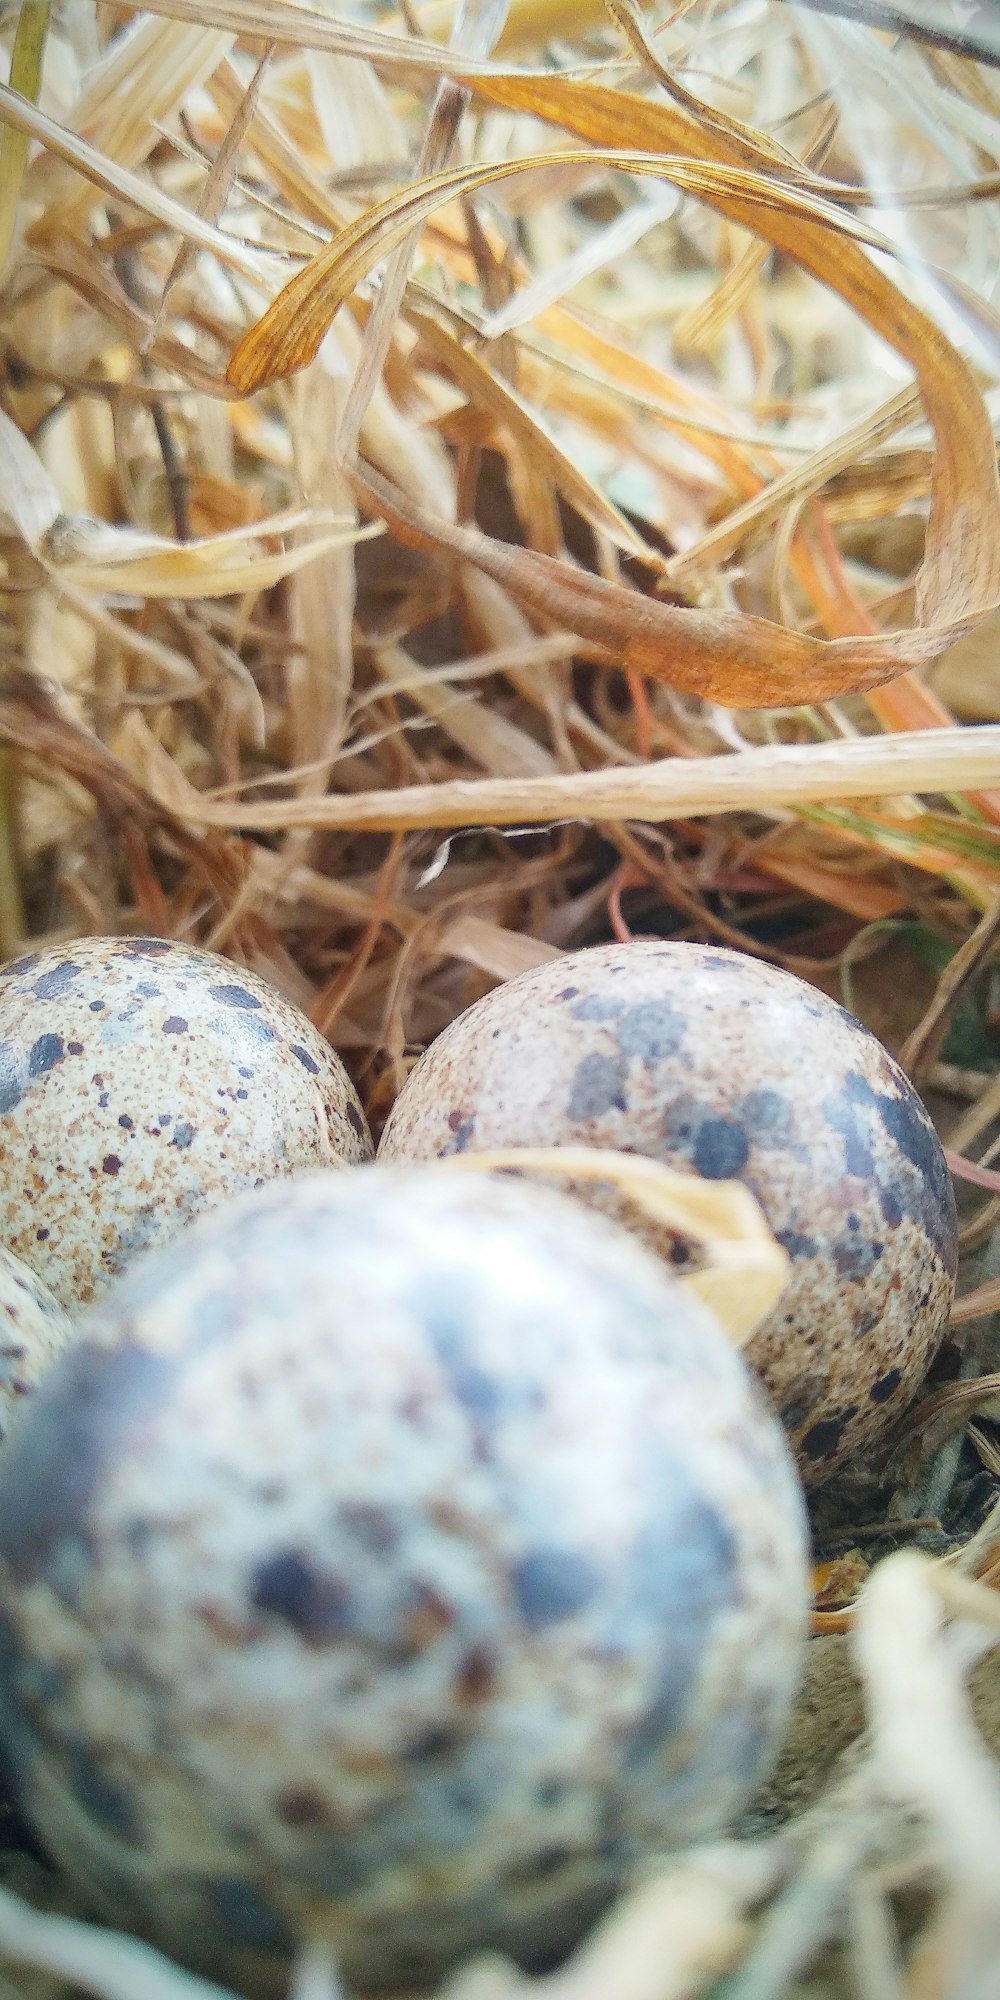 brow quail eggs on best